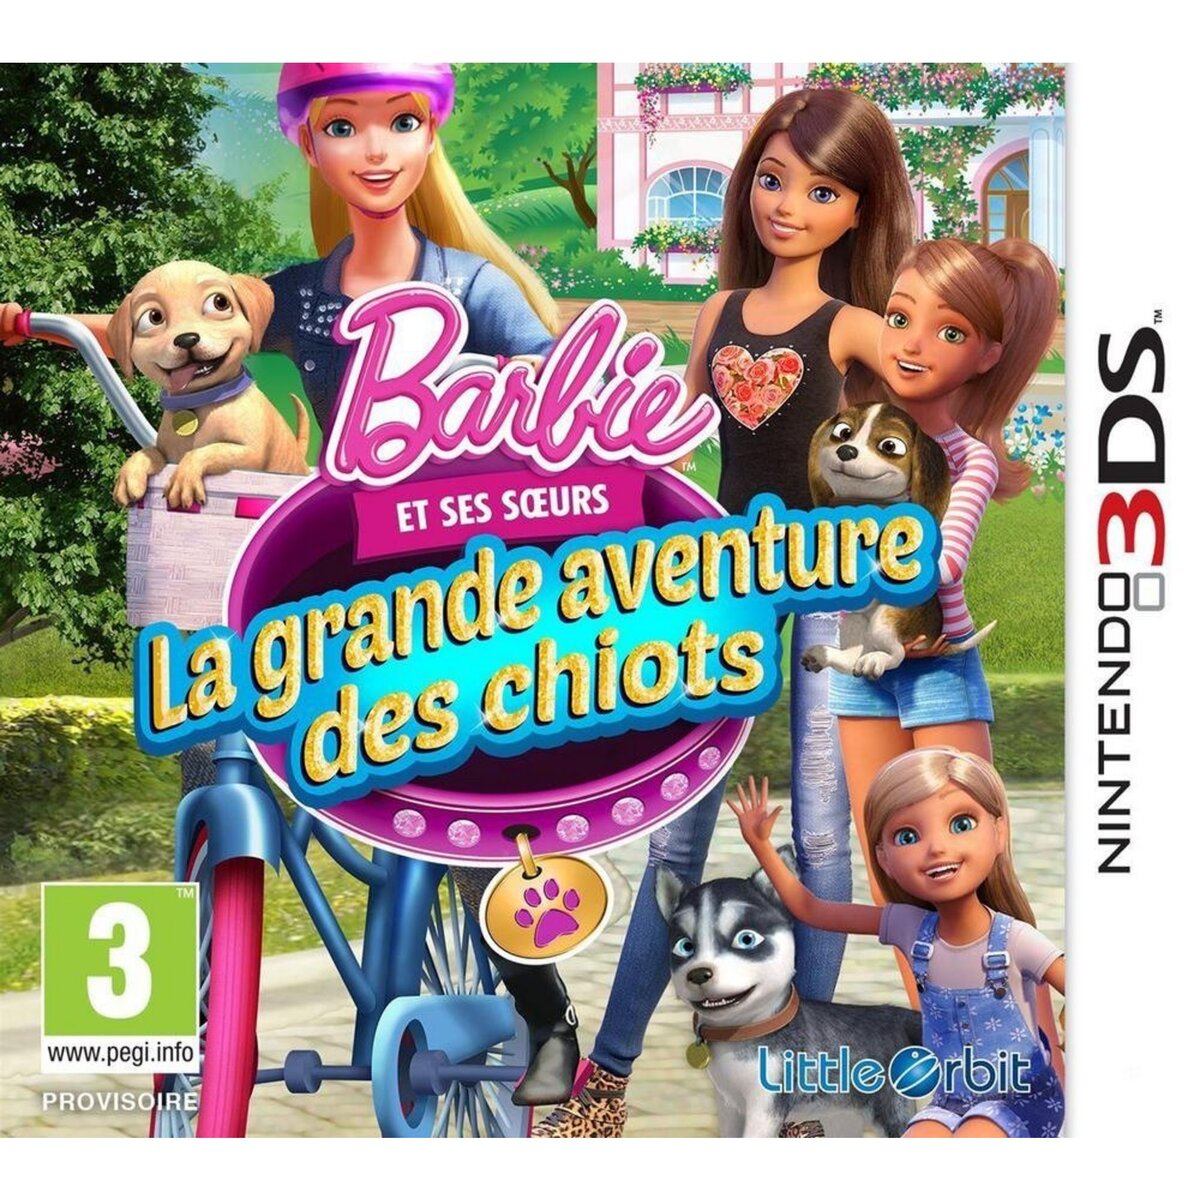 Barbie et la grande aventure des chiots - 3DS